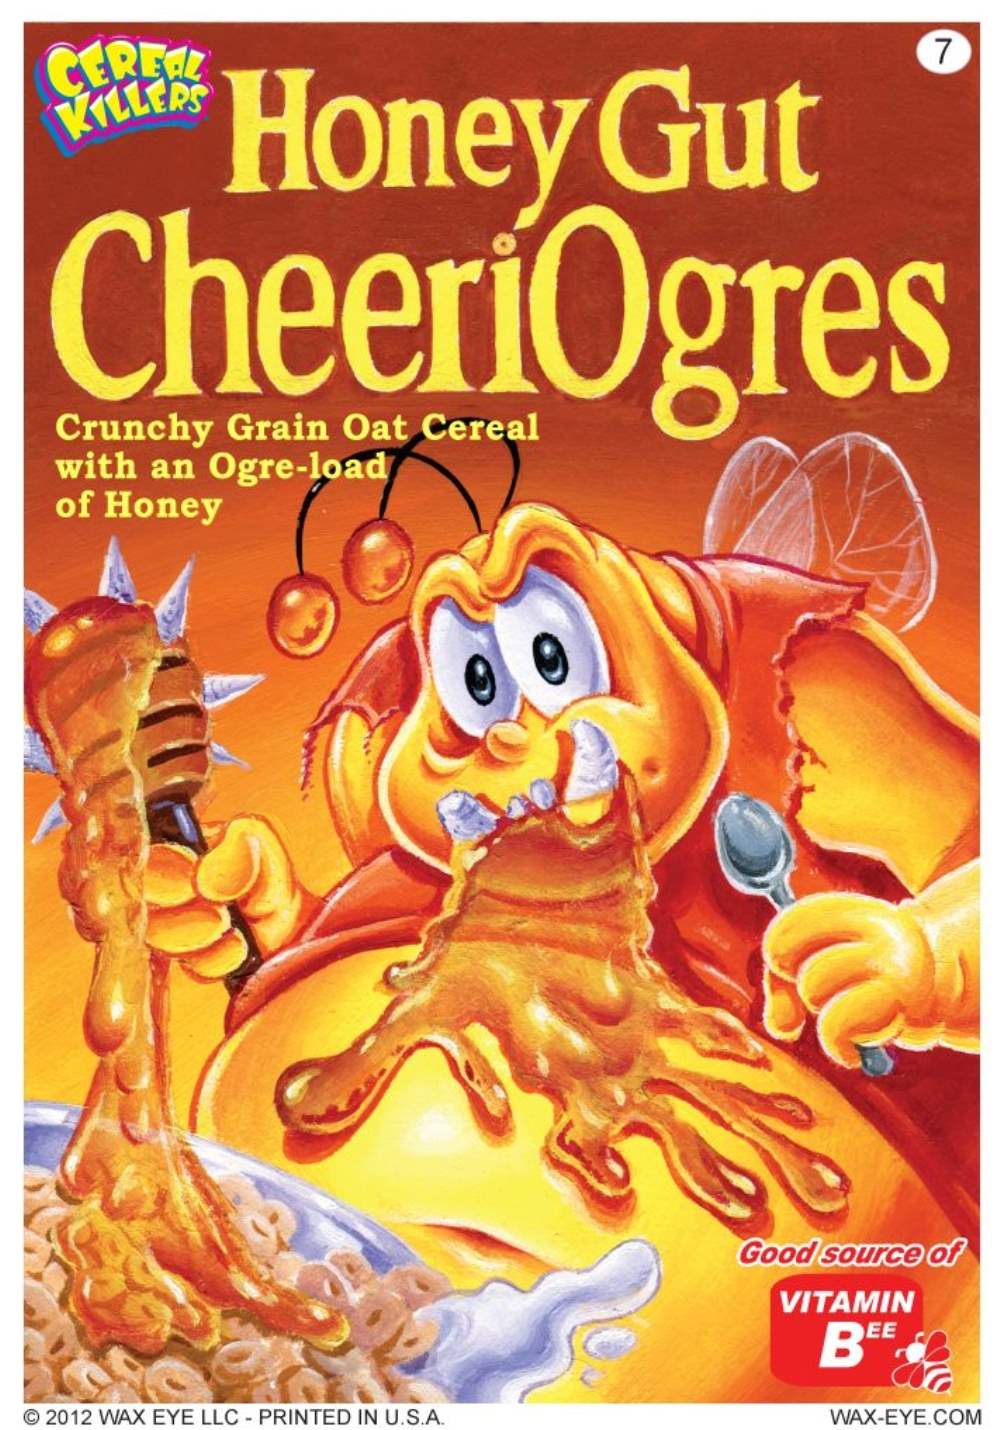 Cereal Killers Honey Gut Cheeriogres